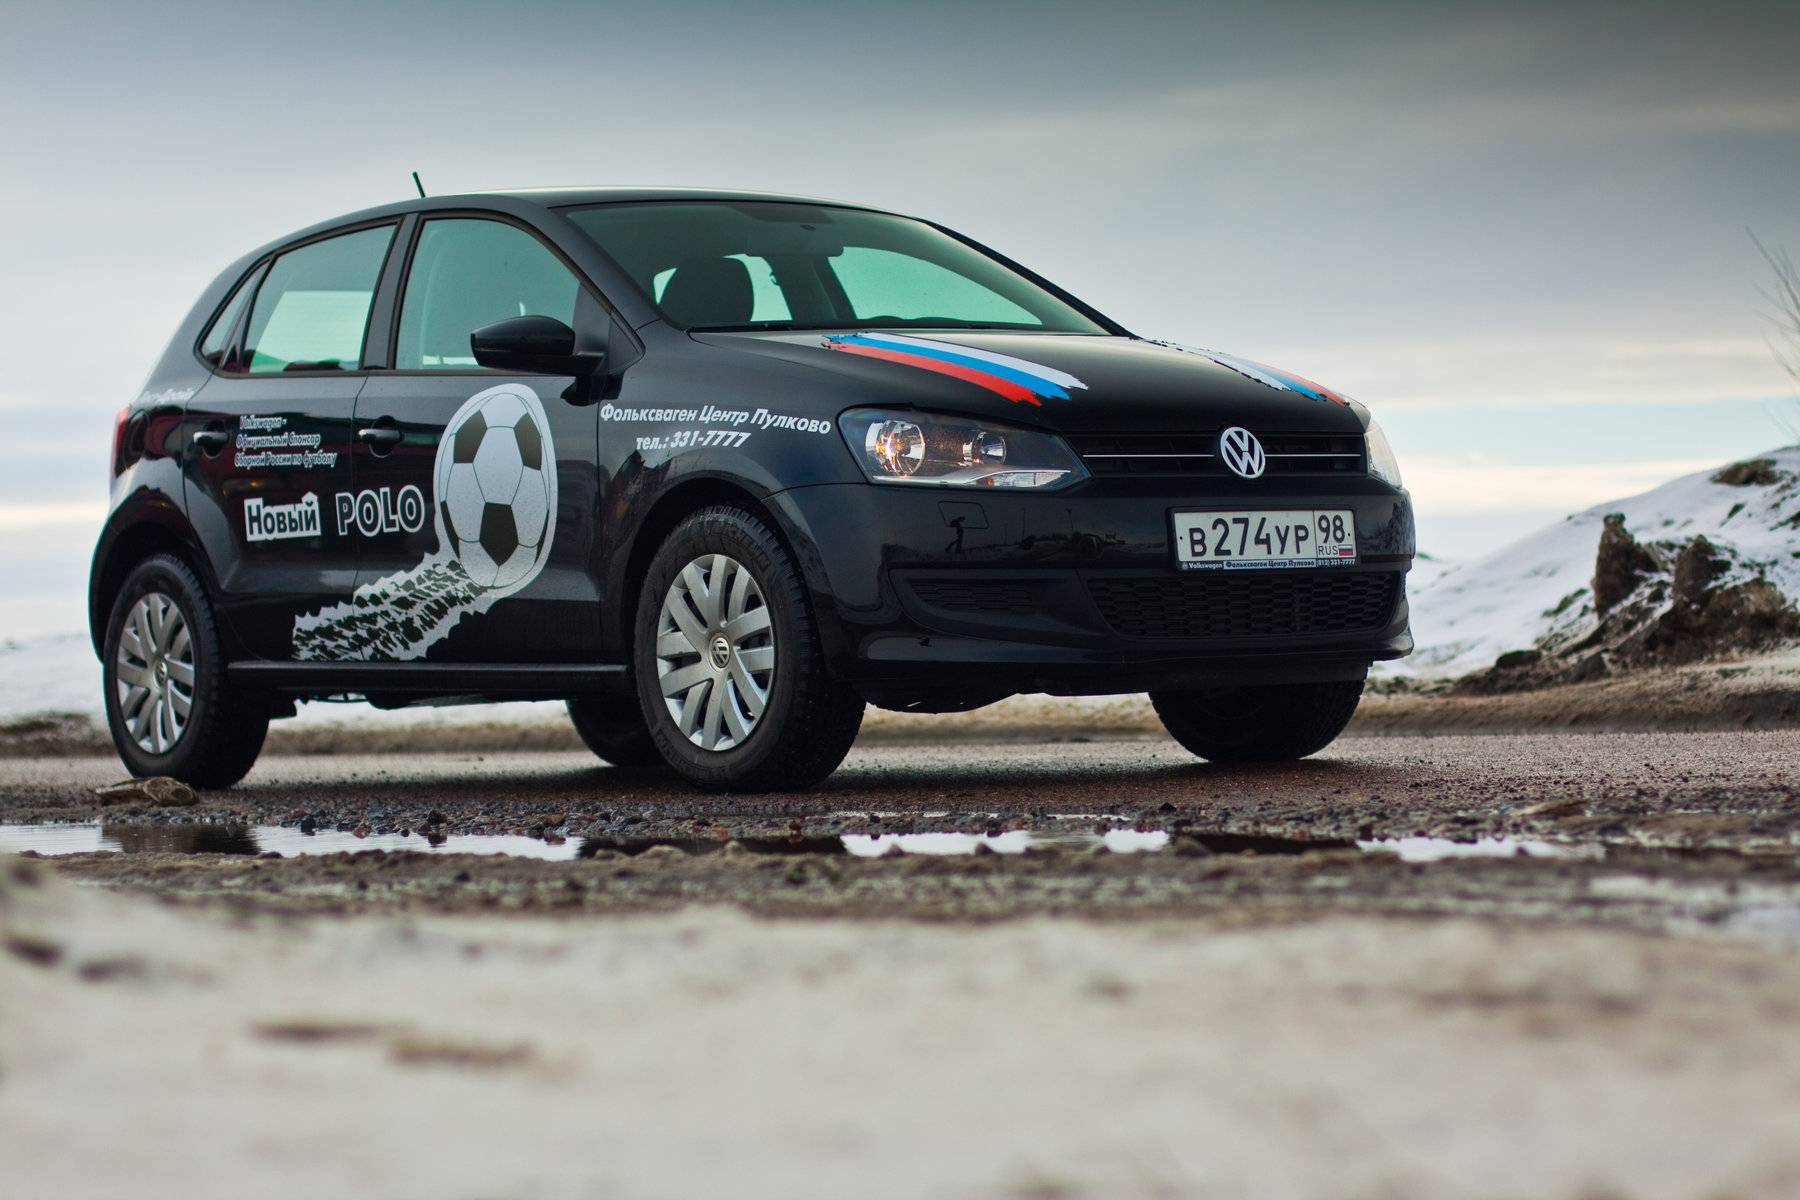 Volkswagen polo хэтчбек (фольксваген поло) видео обзор и тест драйв